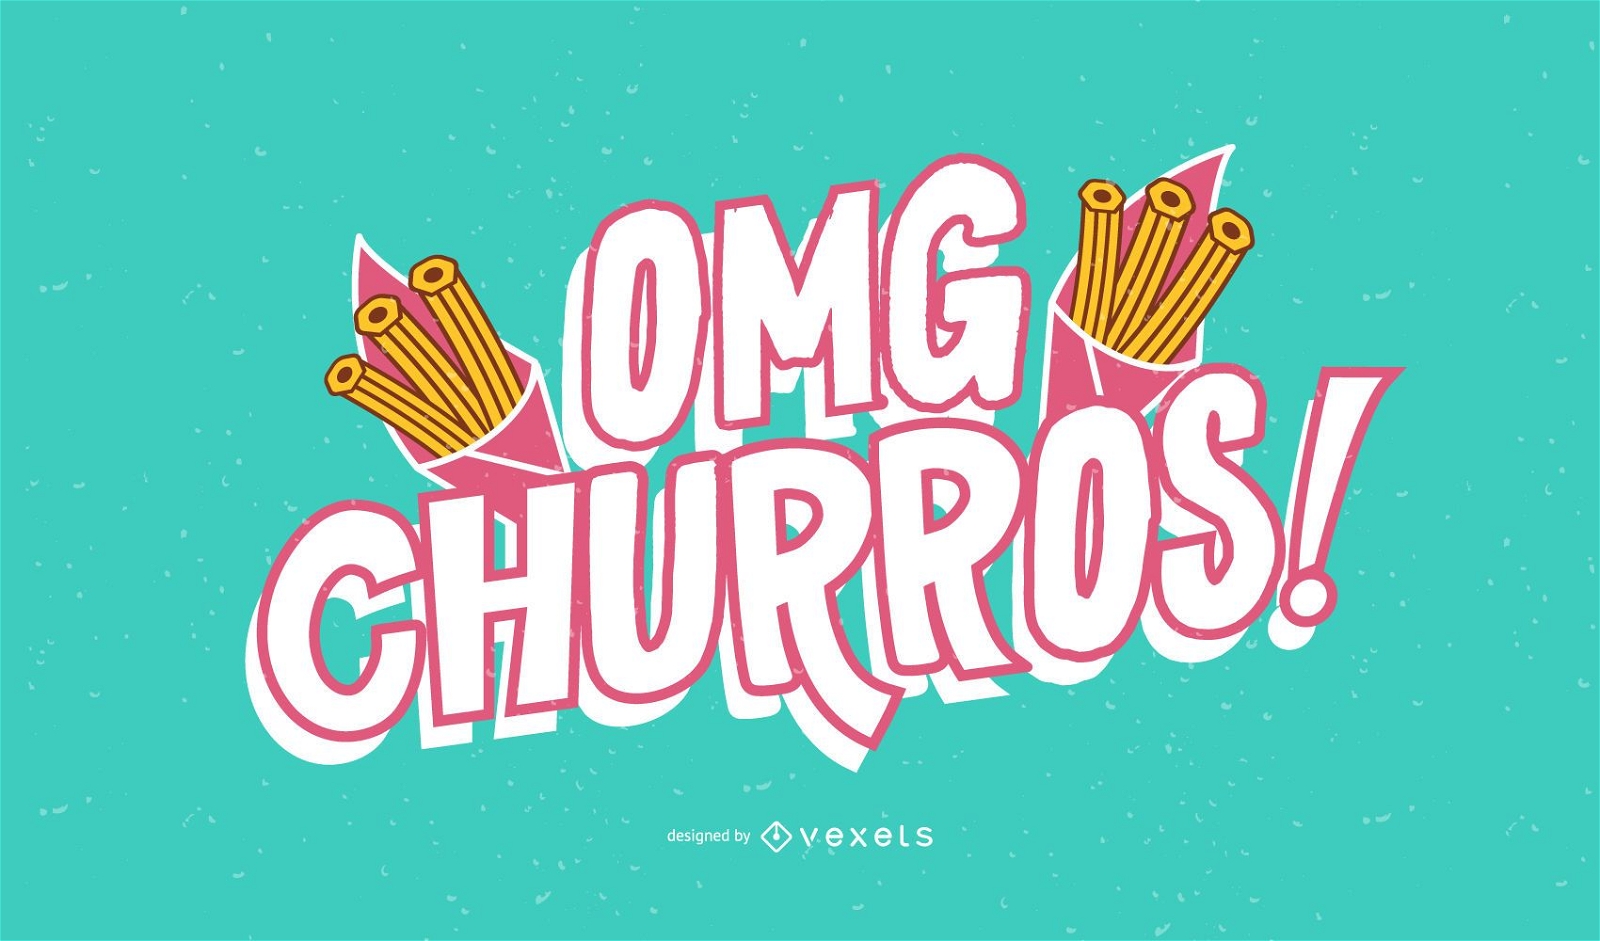 OMG churros lettering design